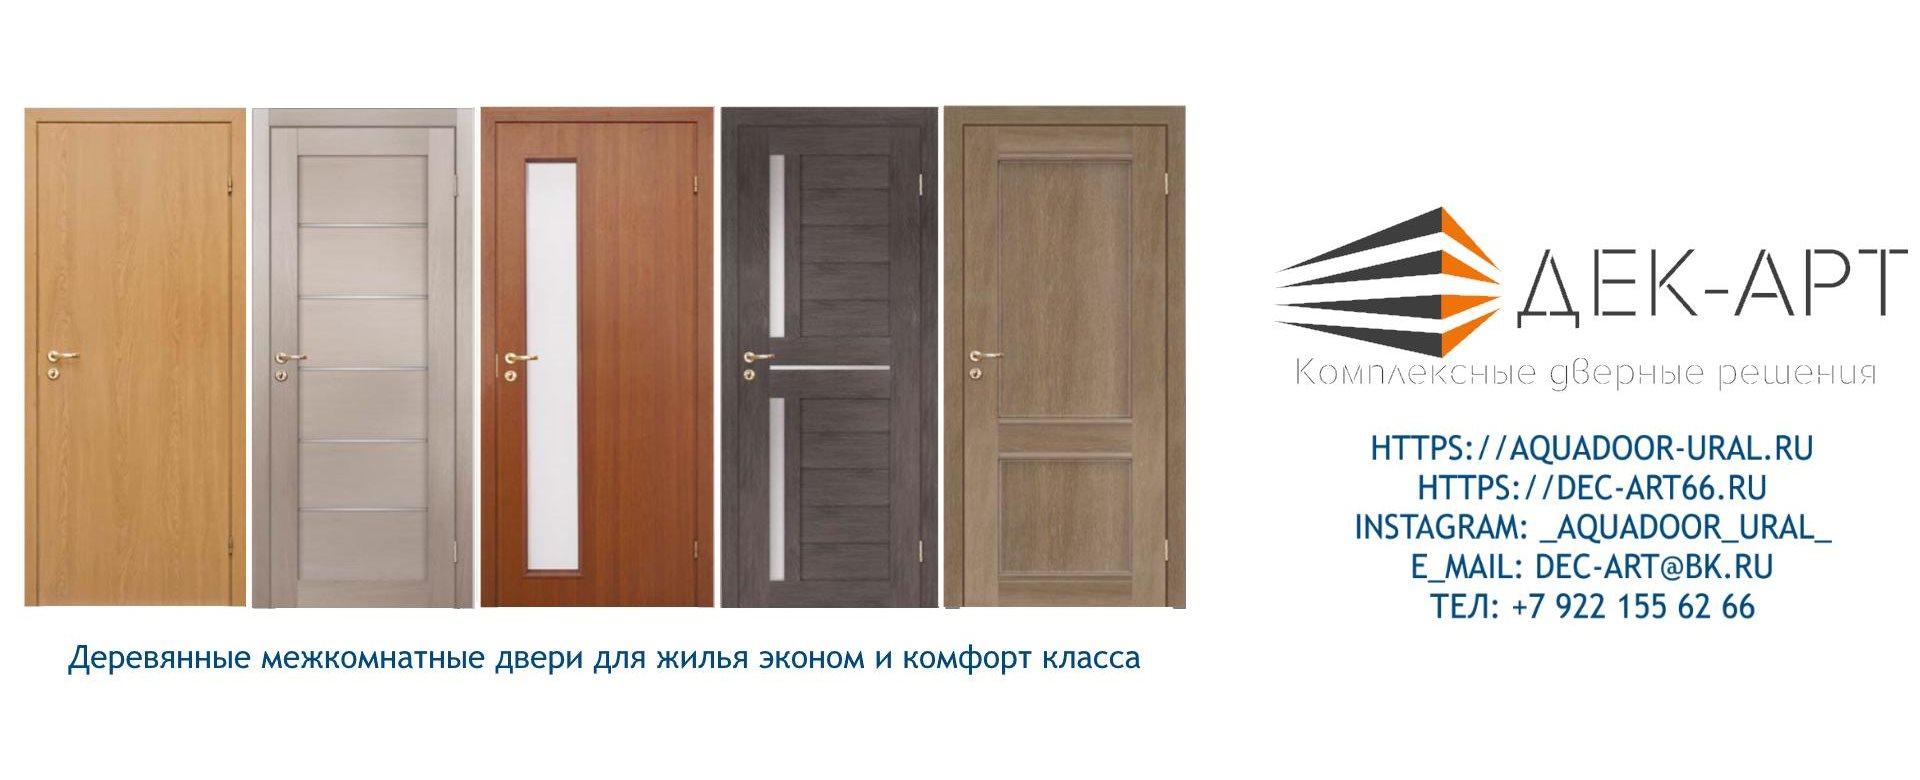 Двери деревянные для жилья эконом и комфорт класса